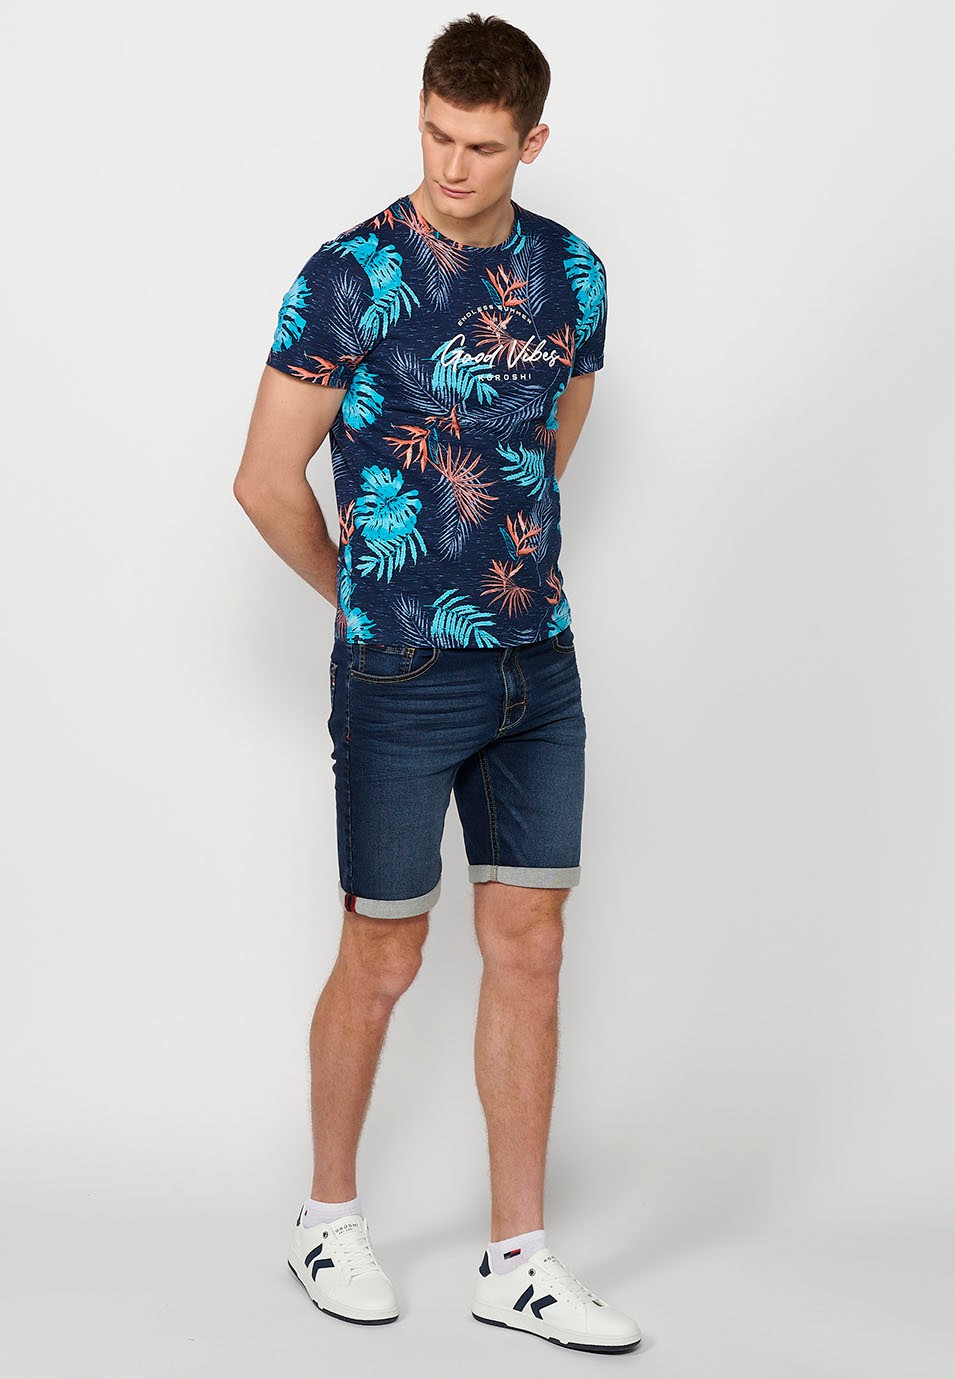 Camiseta manga corta de algodon con estampado tropical multicolor navy para hombre